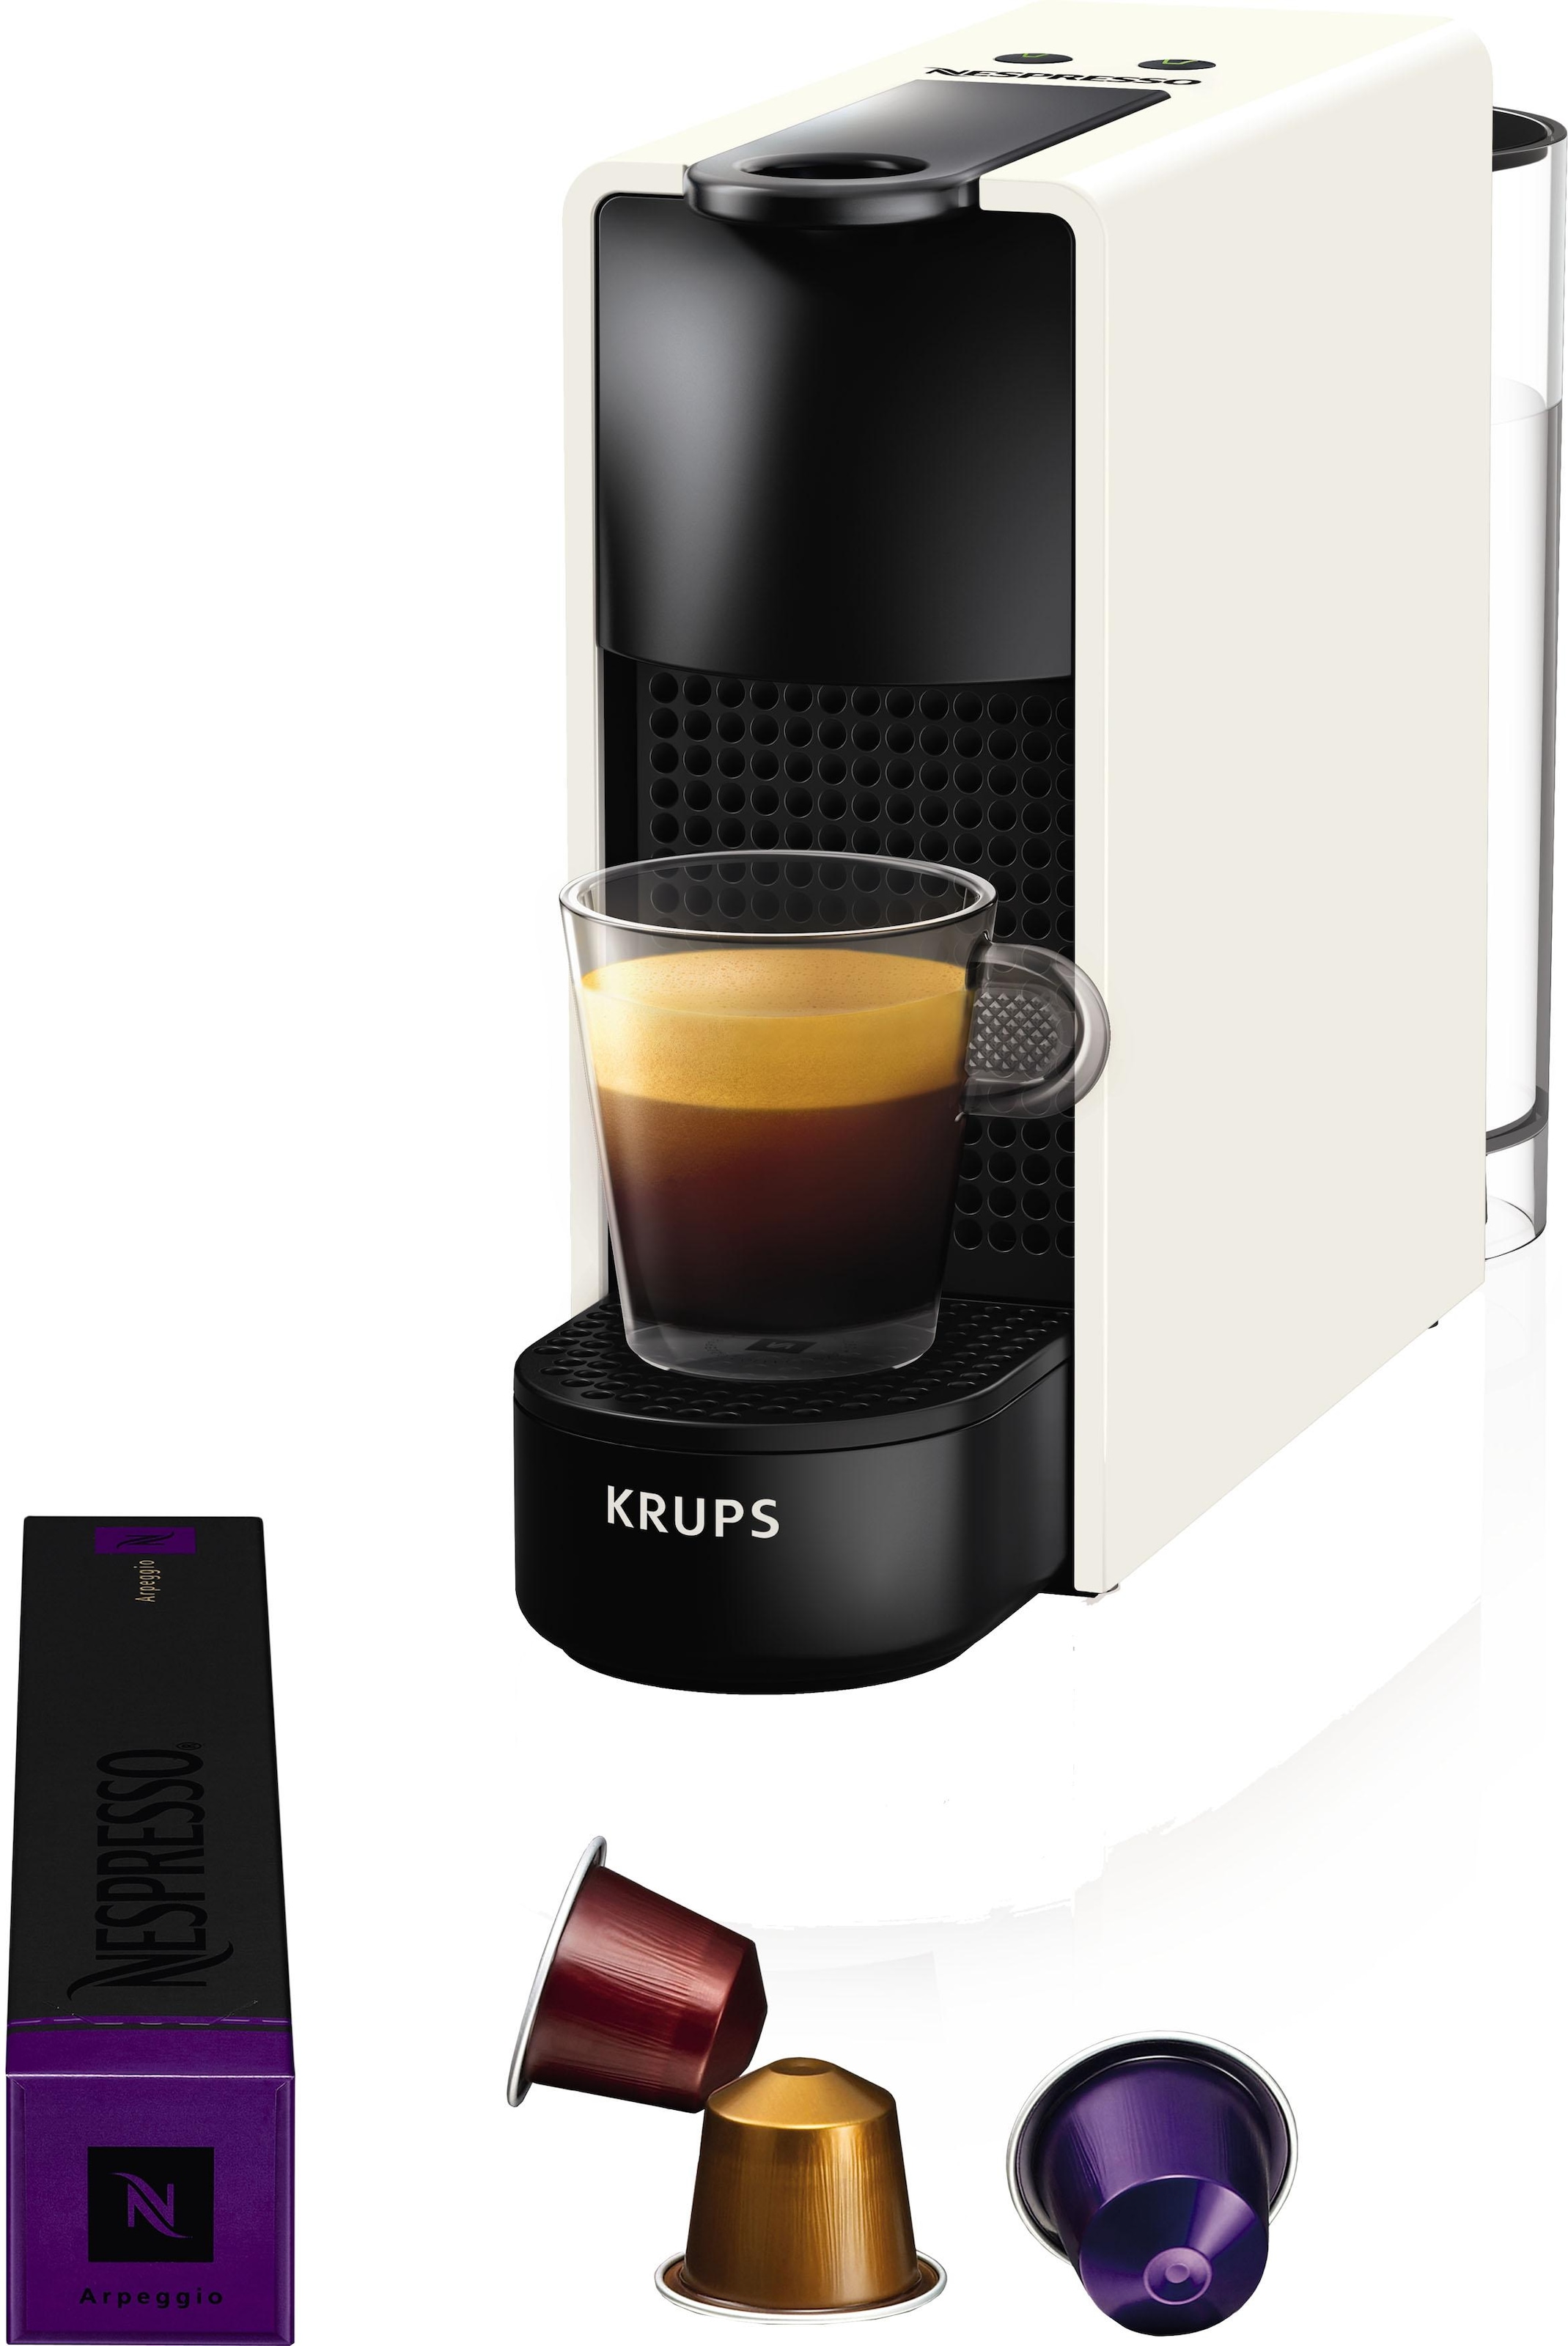 von XXL »XN1005 Krups«, Jahren 7 mit 3 Kaffeemenge inkl. Garantie Inissia mit Willkommenspaket einstellbar, Nespresso Kapseln Kapselmaschine